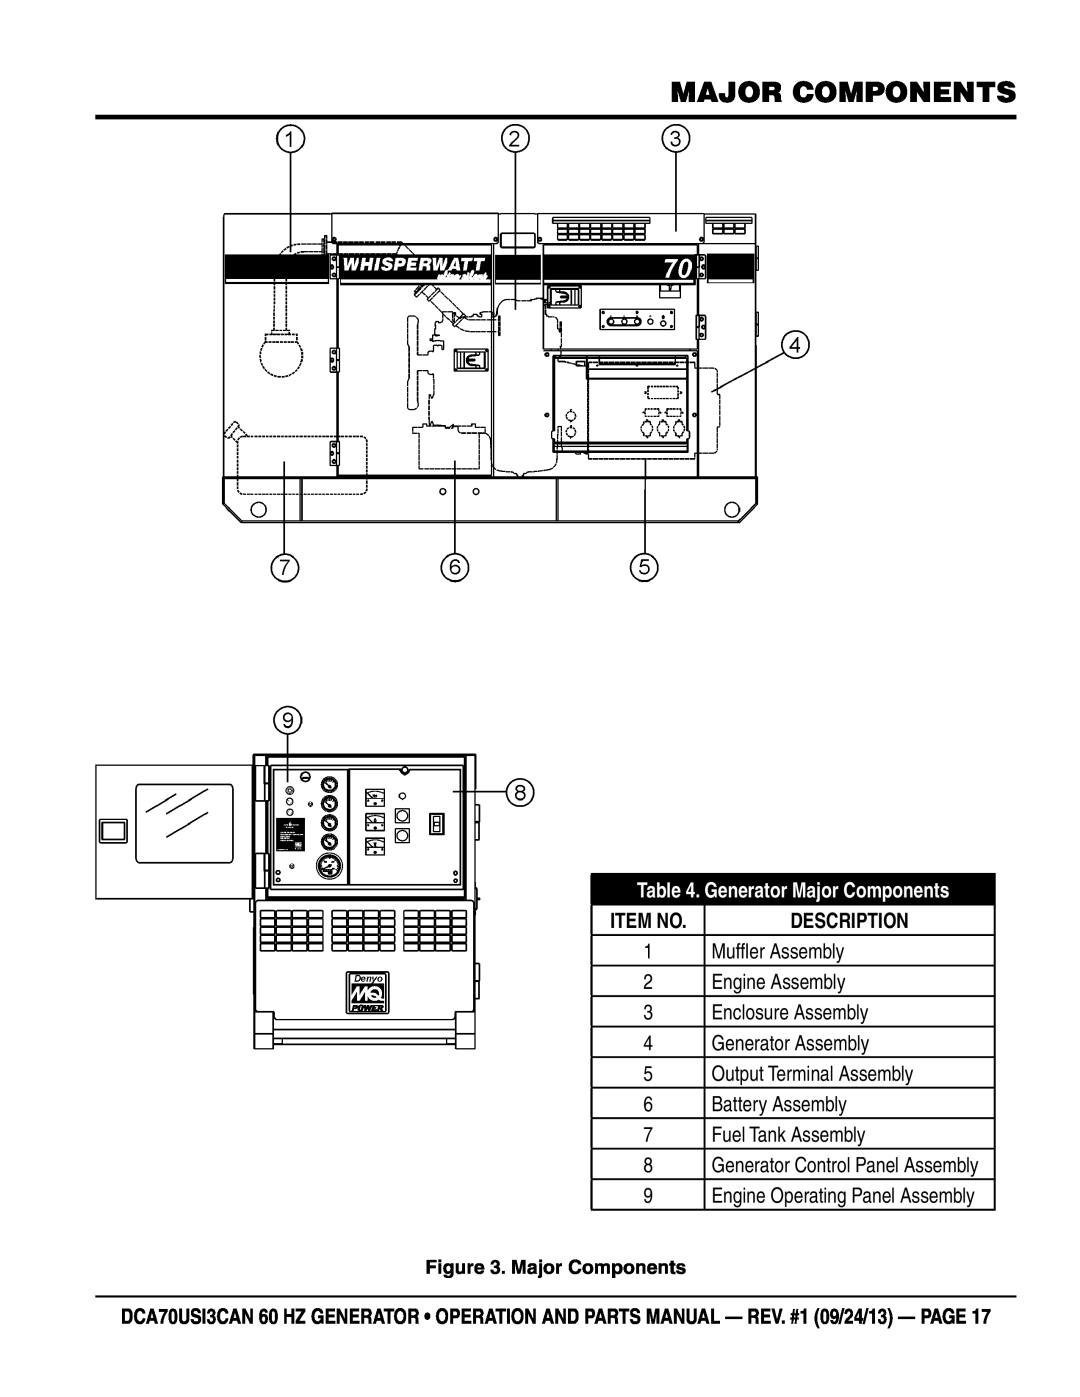 Multiquip DCA70US13CAN manual Generator Major Components, Item No, Description 